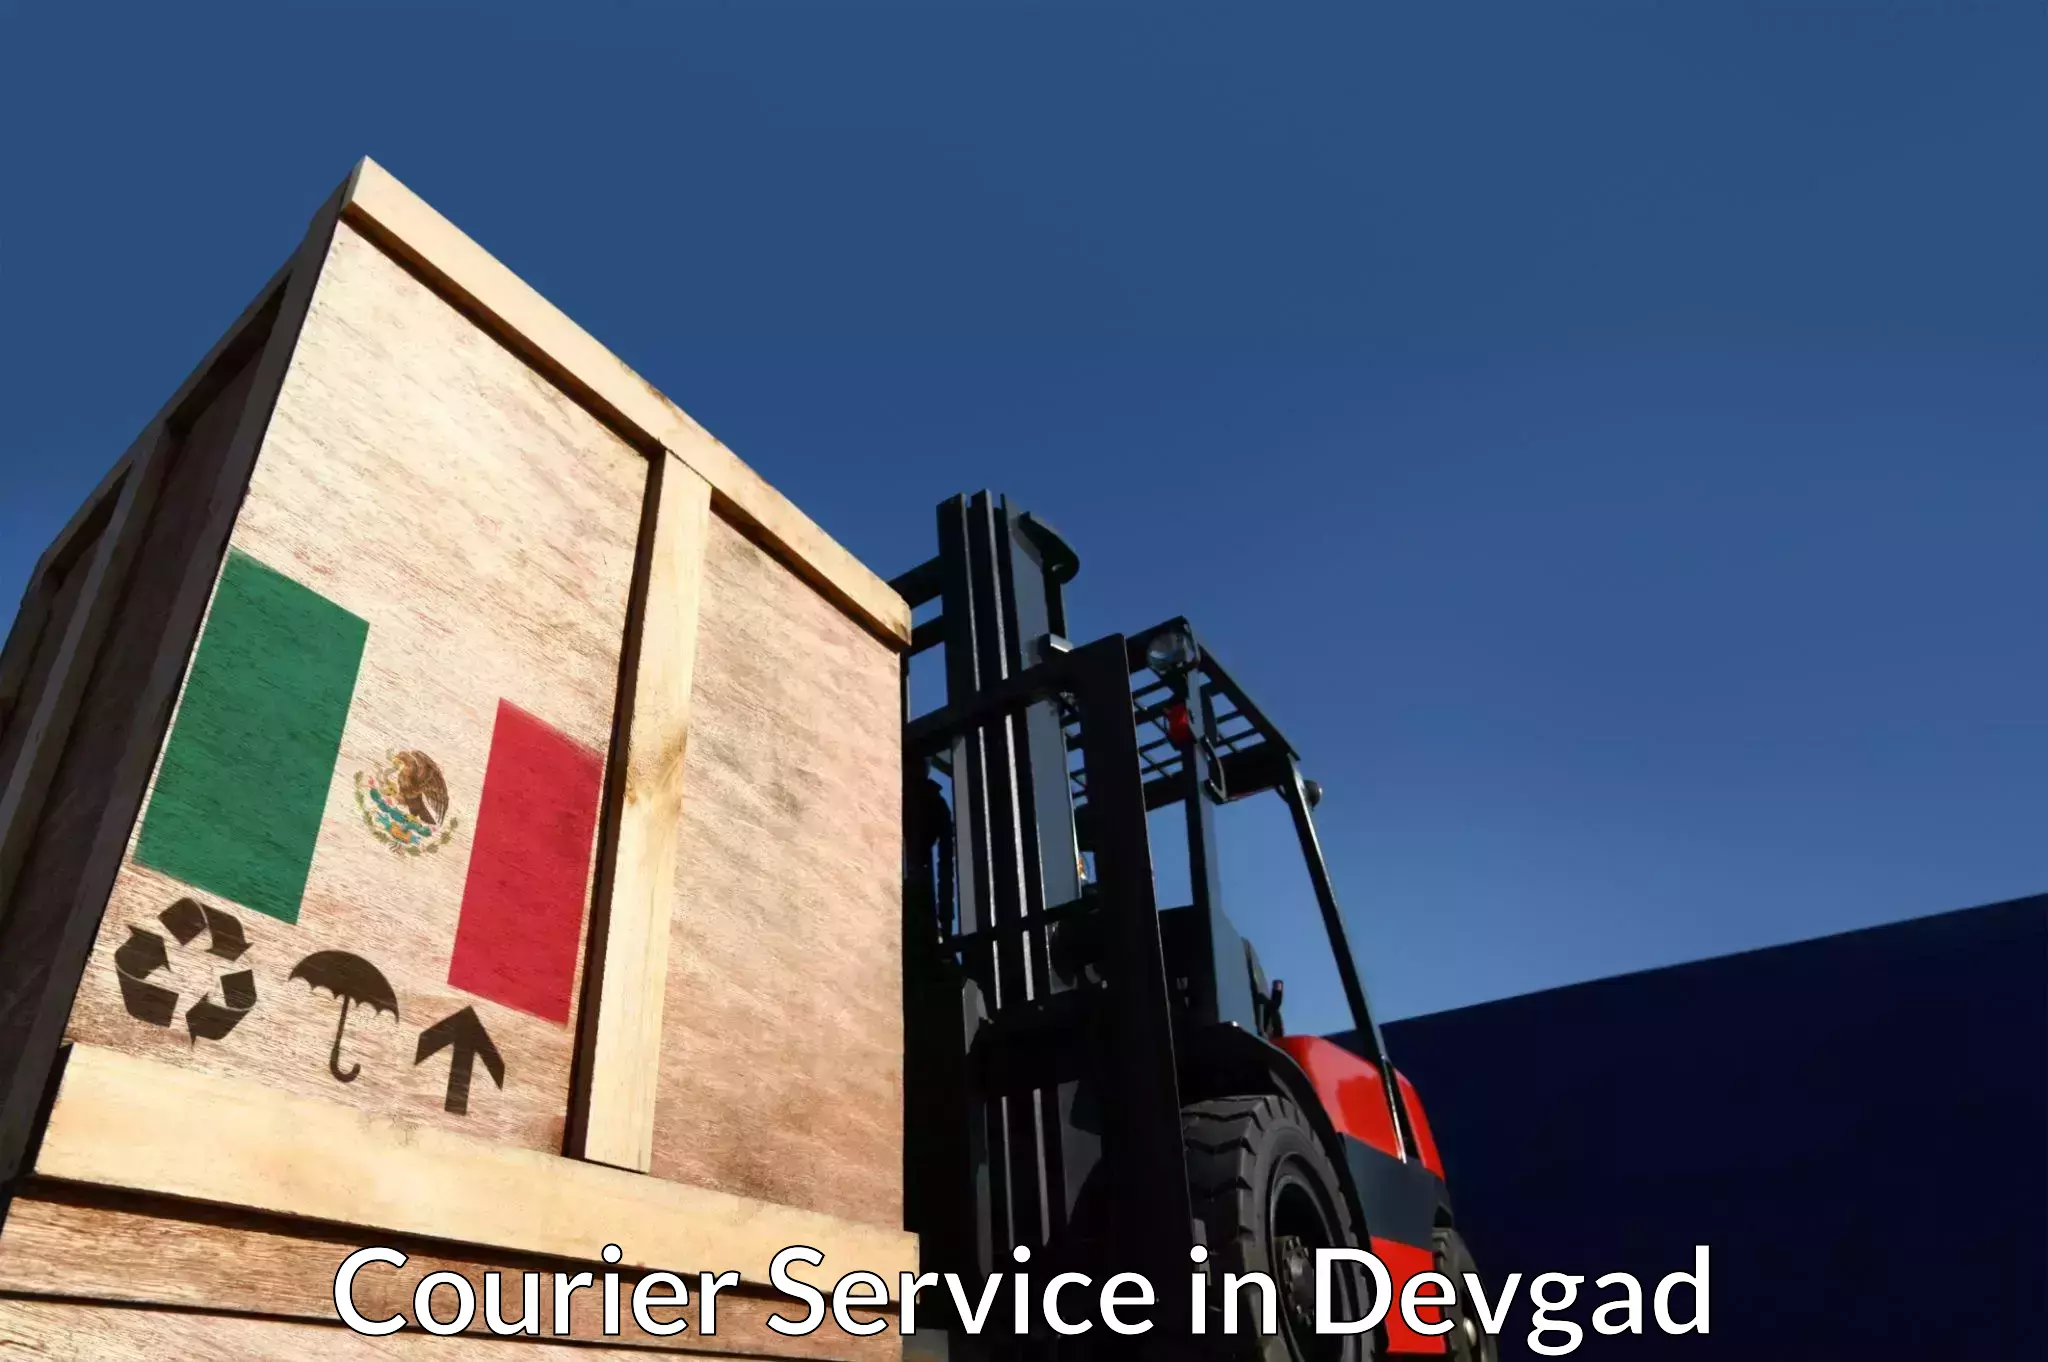 Versatile courier offerings in Devgad